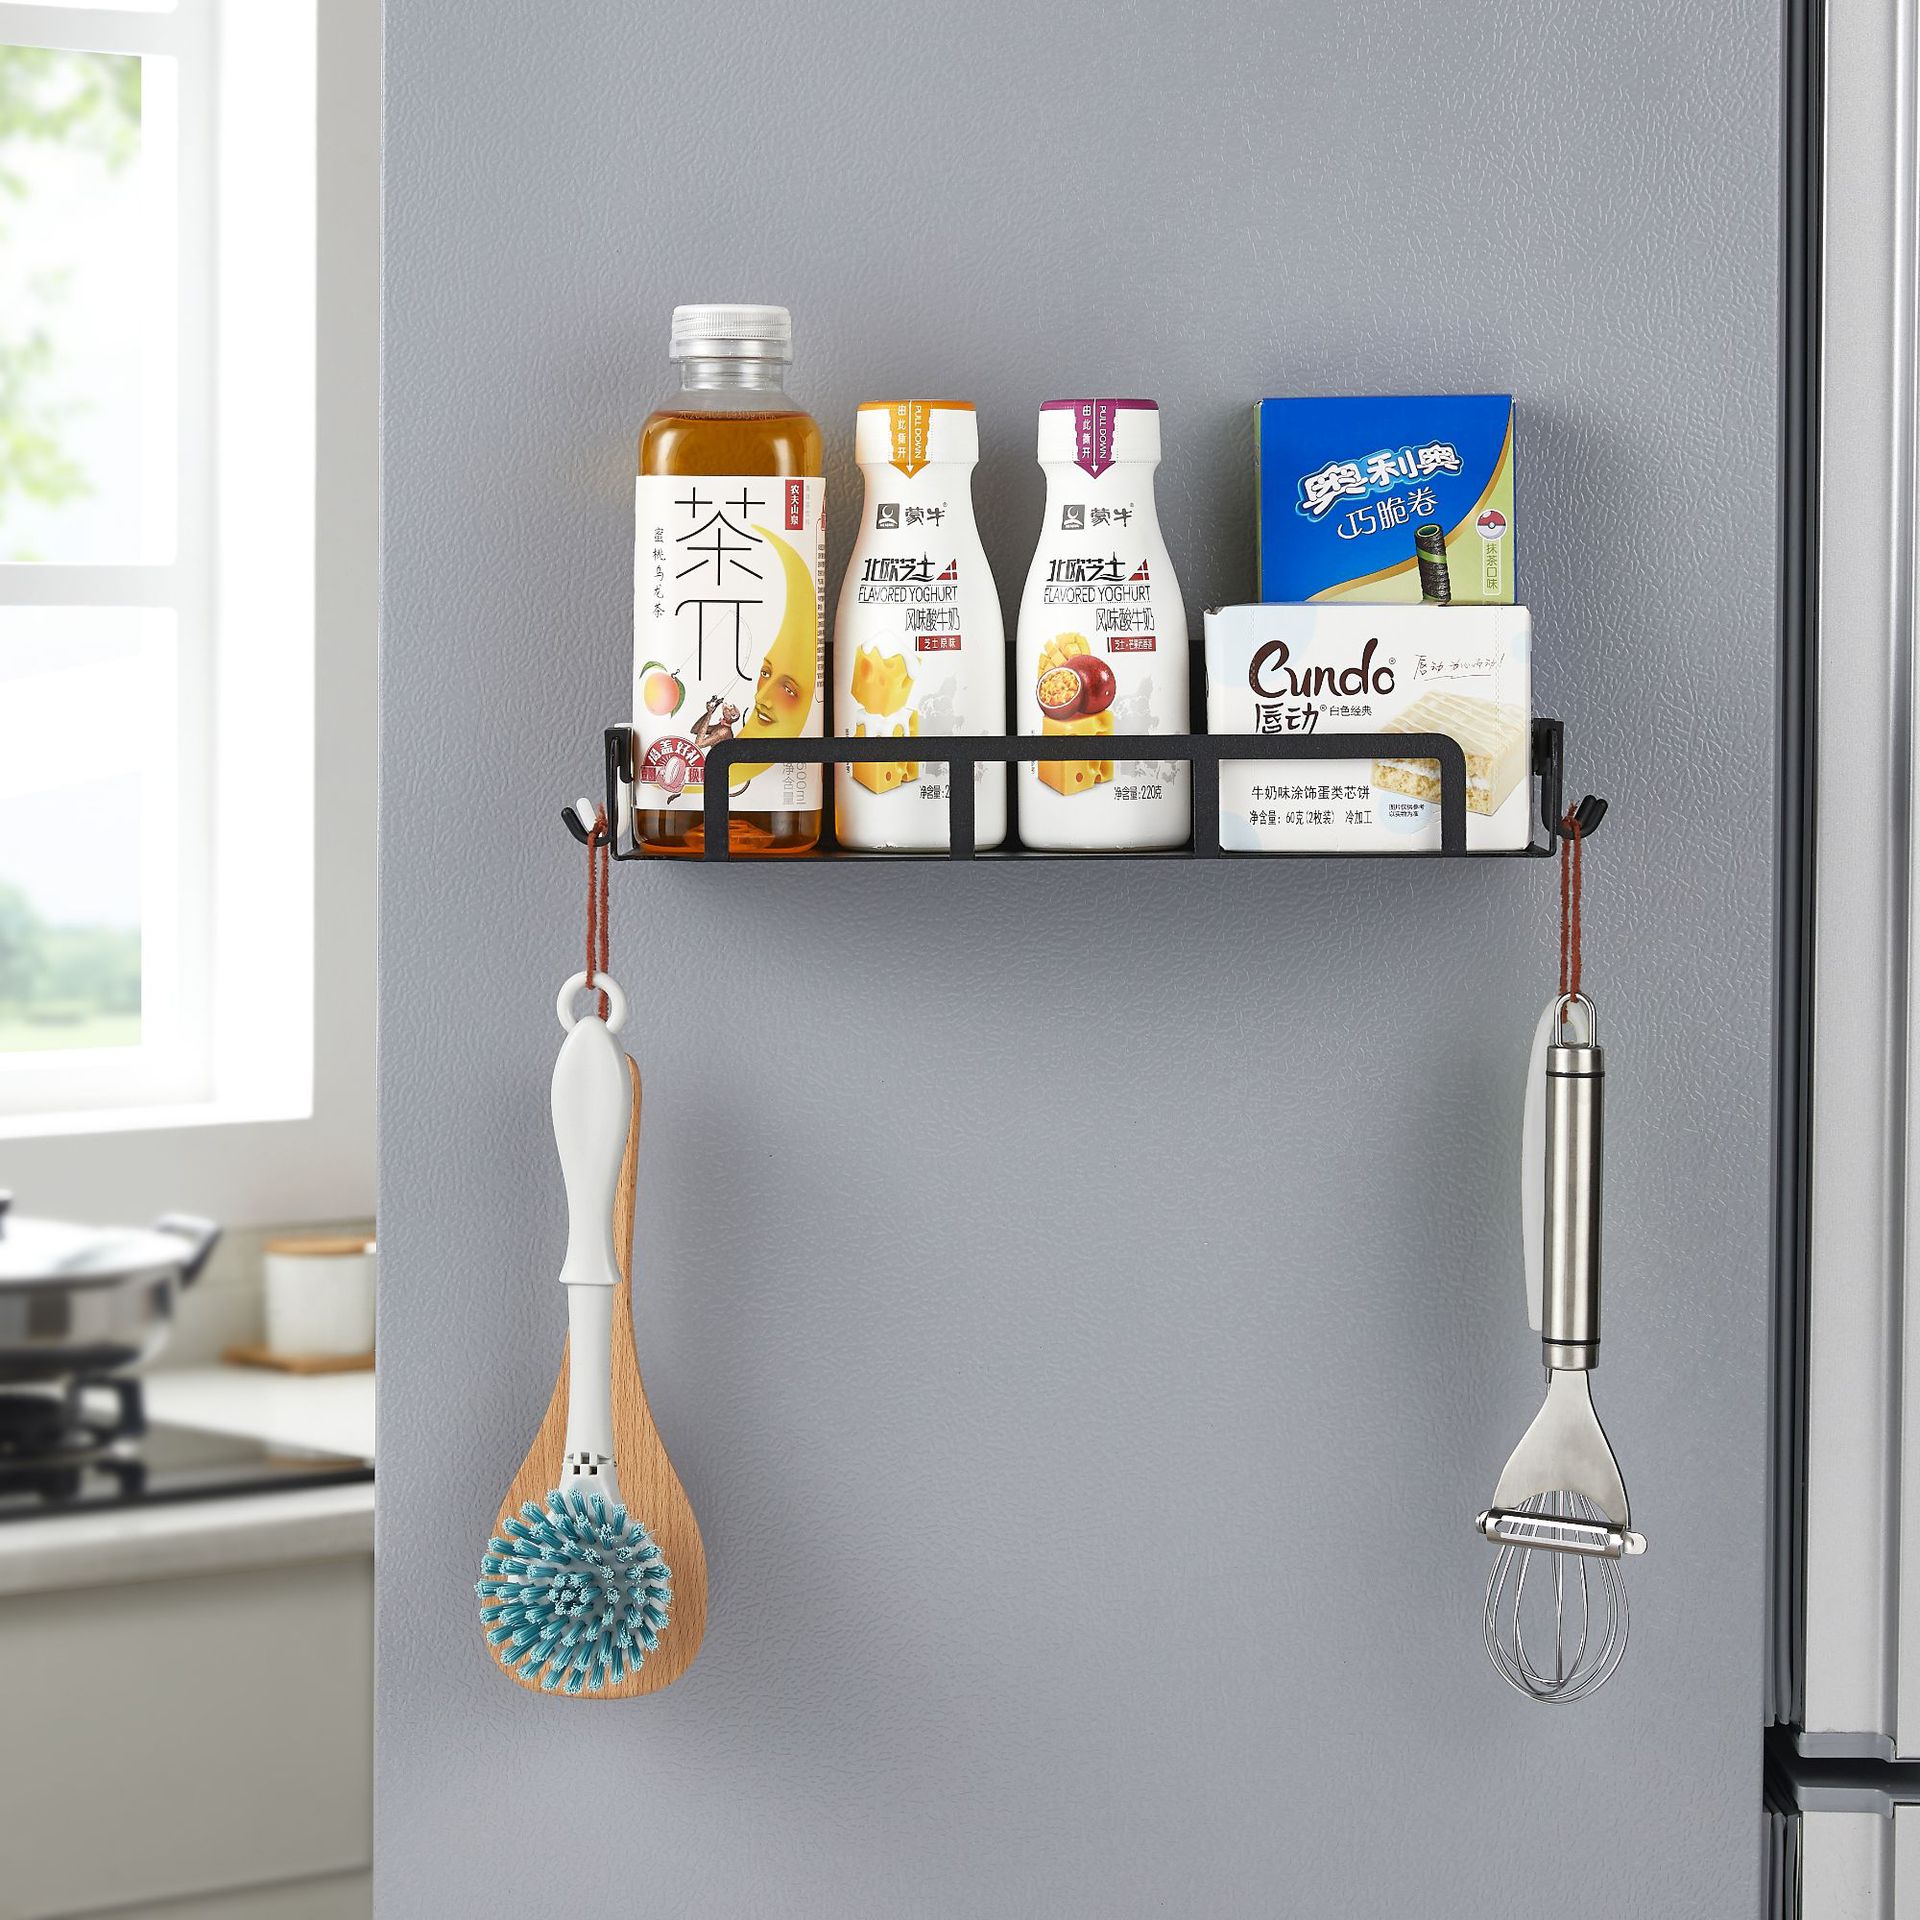 磁吸壁掛式置物架多功能家用廚房用品置物架一體成型冰箱架側掛架